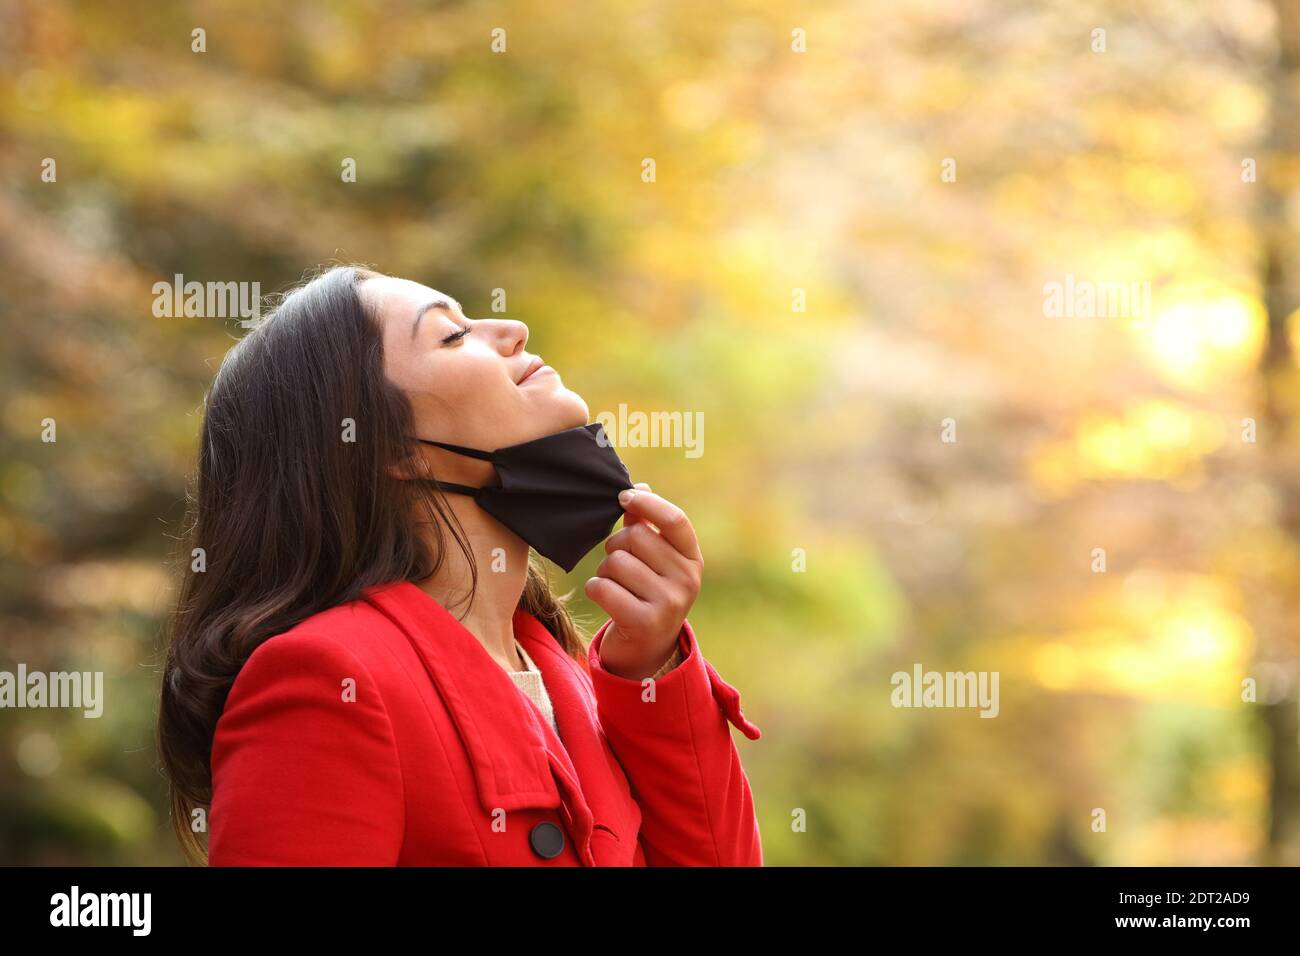 Profilo di una donna che prende la maschera protettiva per respirare aria fresca in un parco in tempi brevi Foto Stock